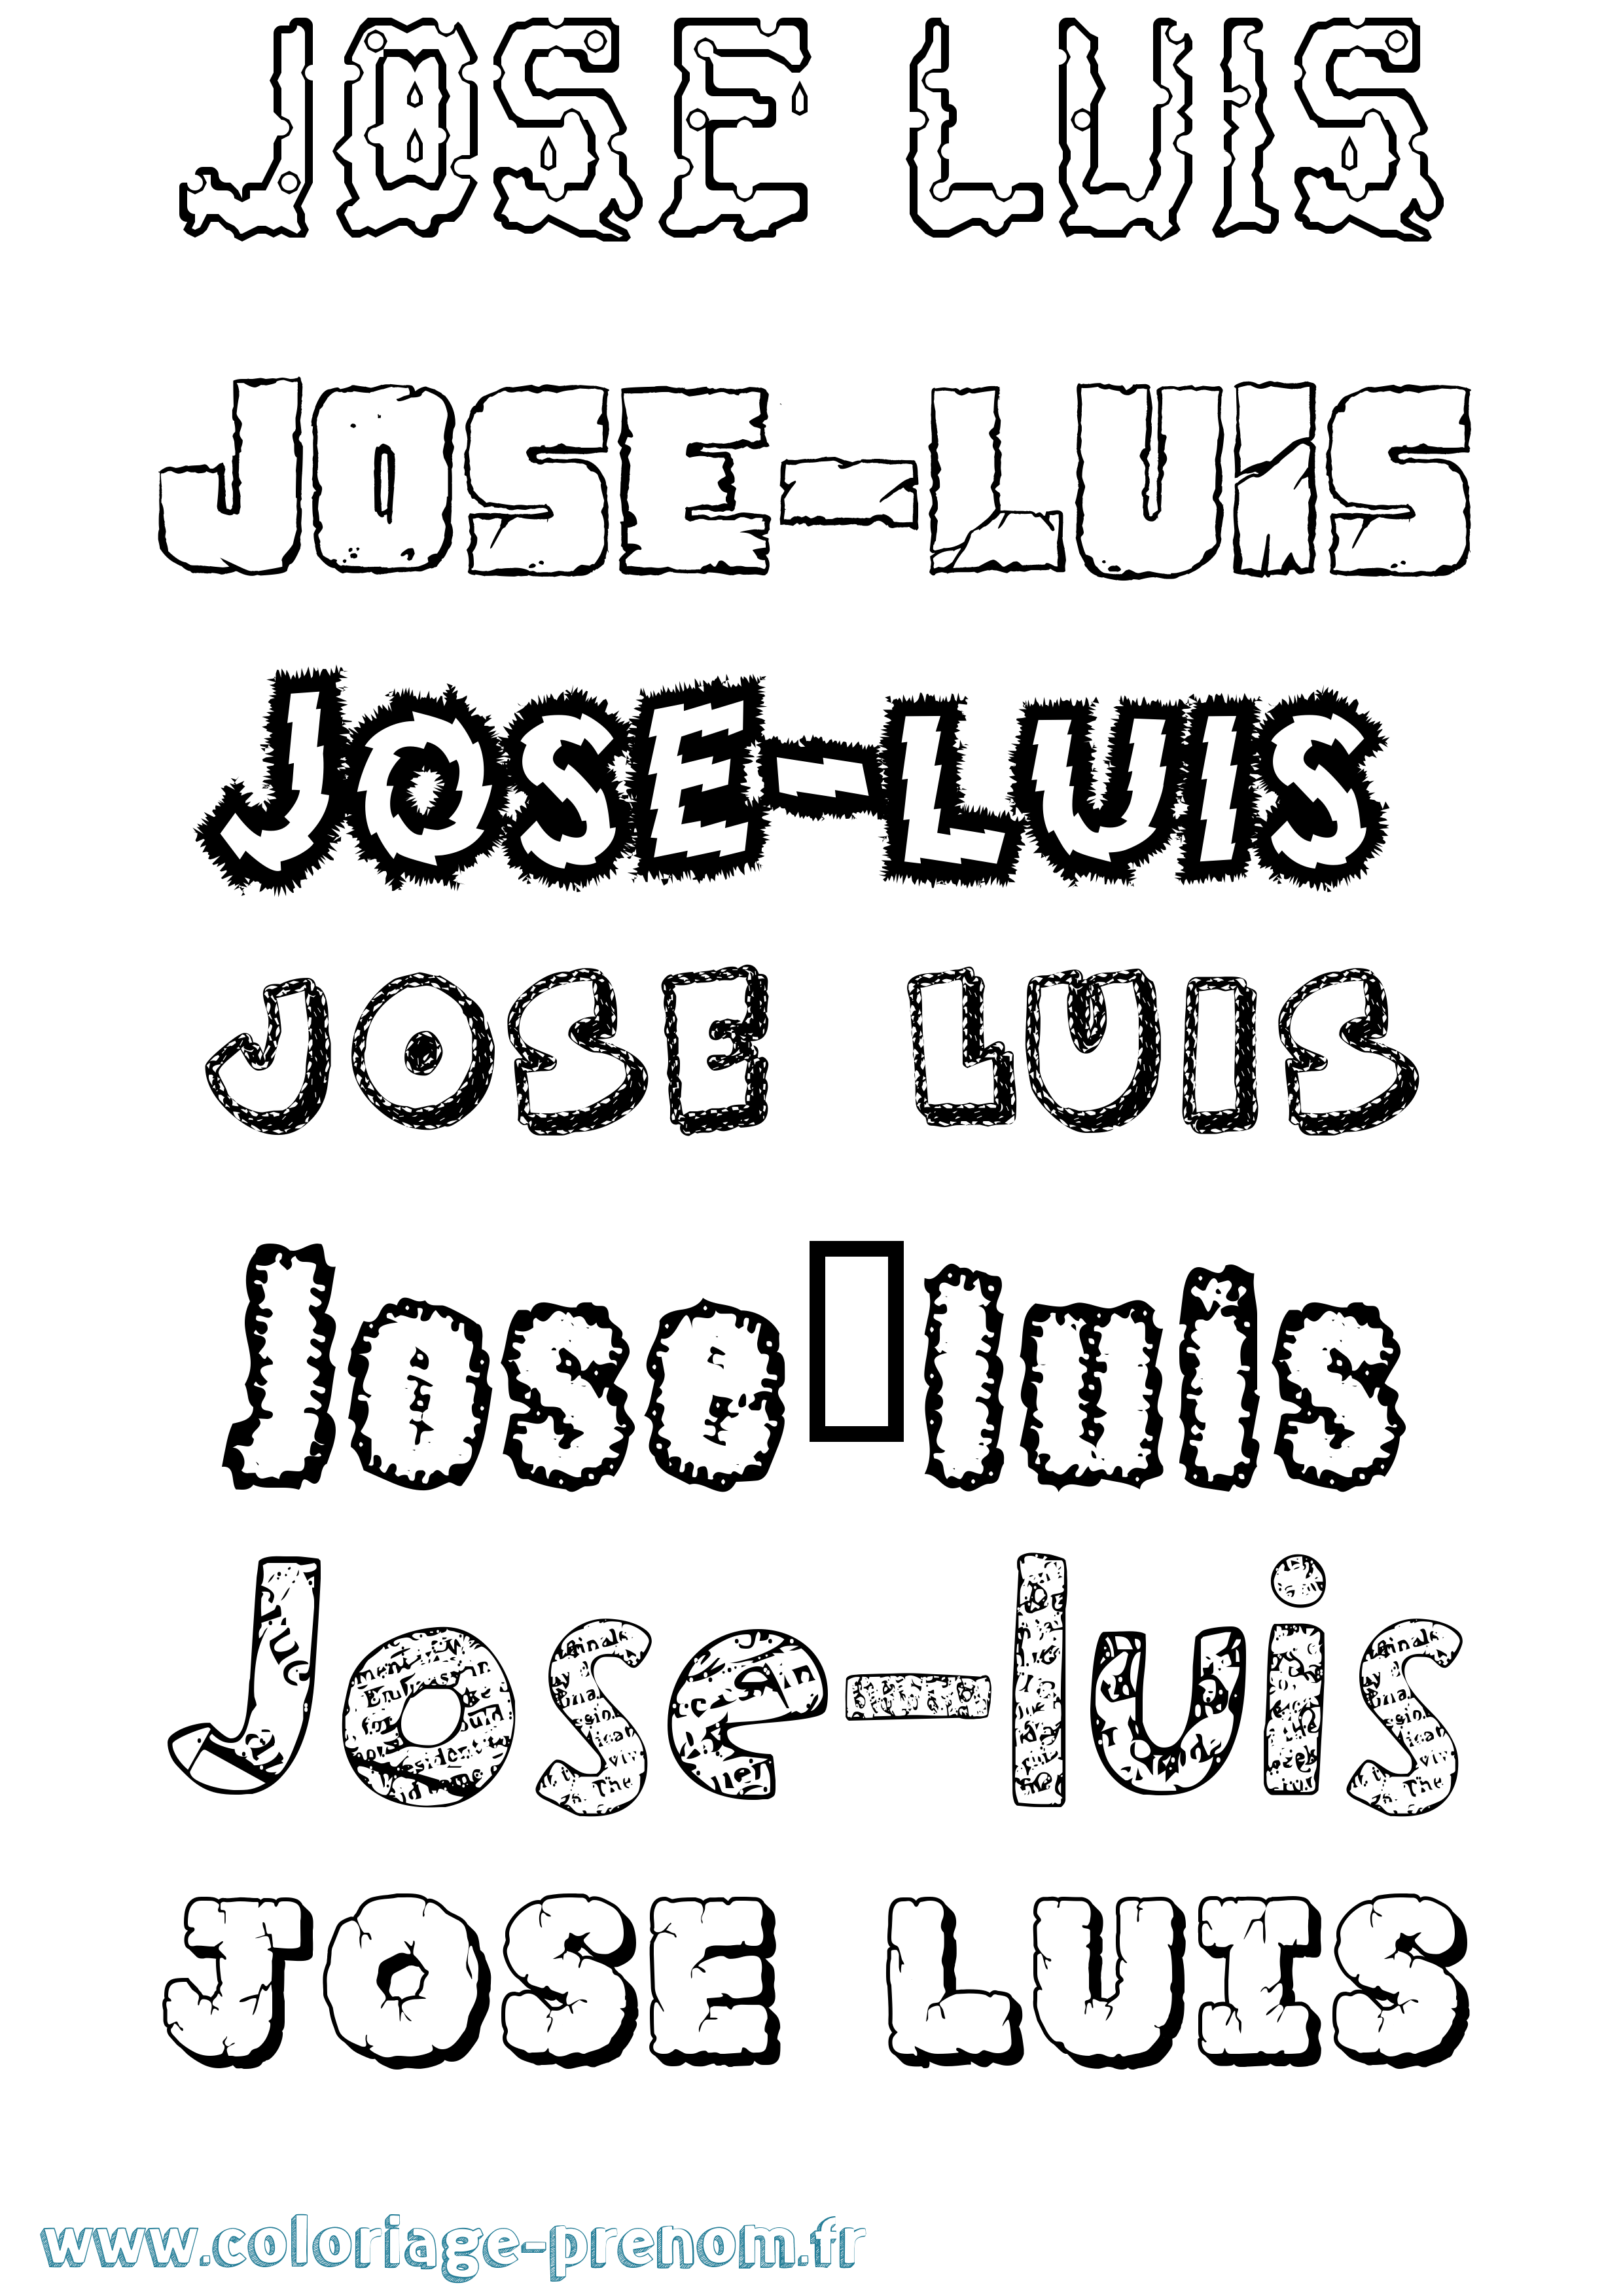 Coloriage prénom José-Luis Destructuré